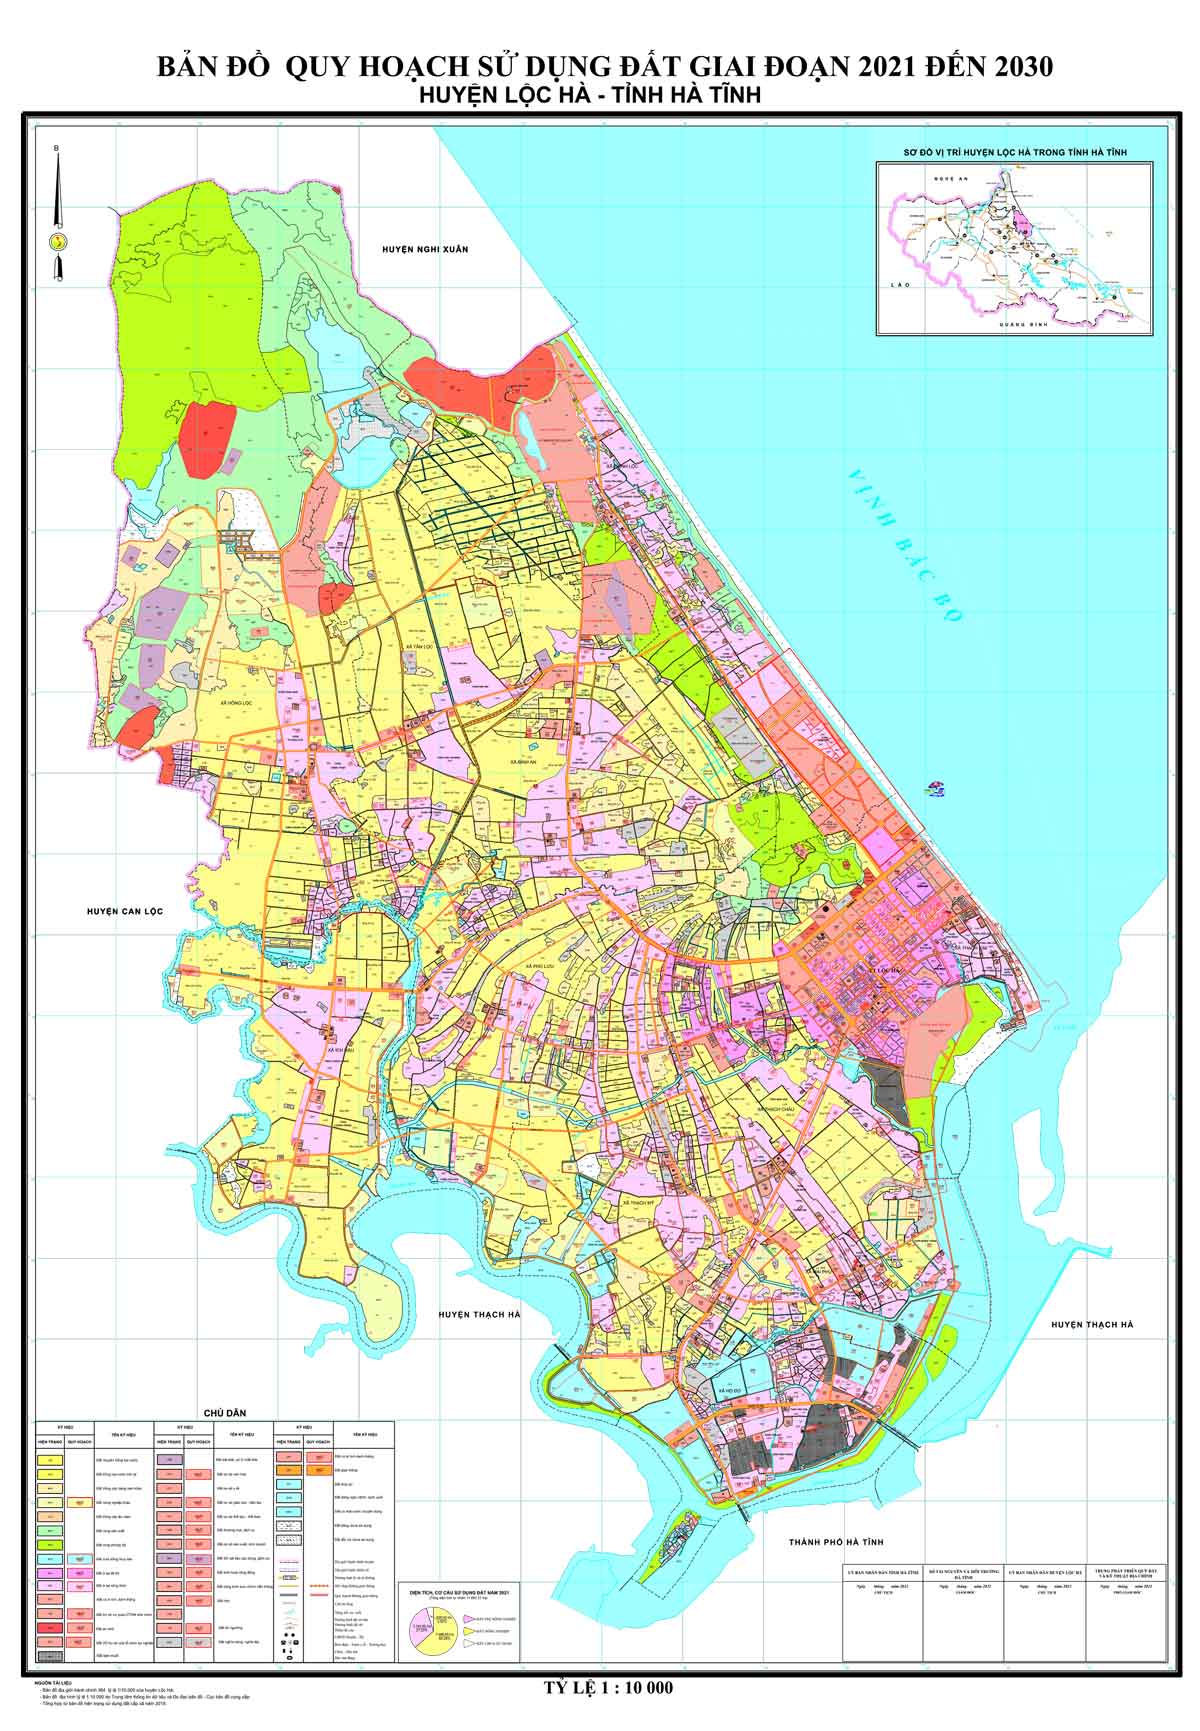 Bản đồ QHSDĐ huyện Lộc Hà đến năm 2030